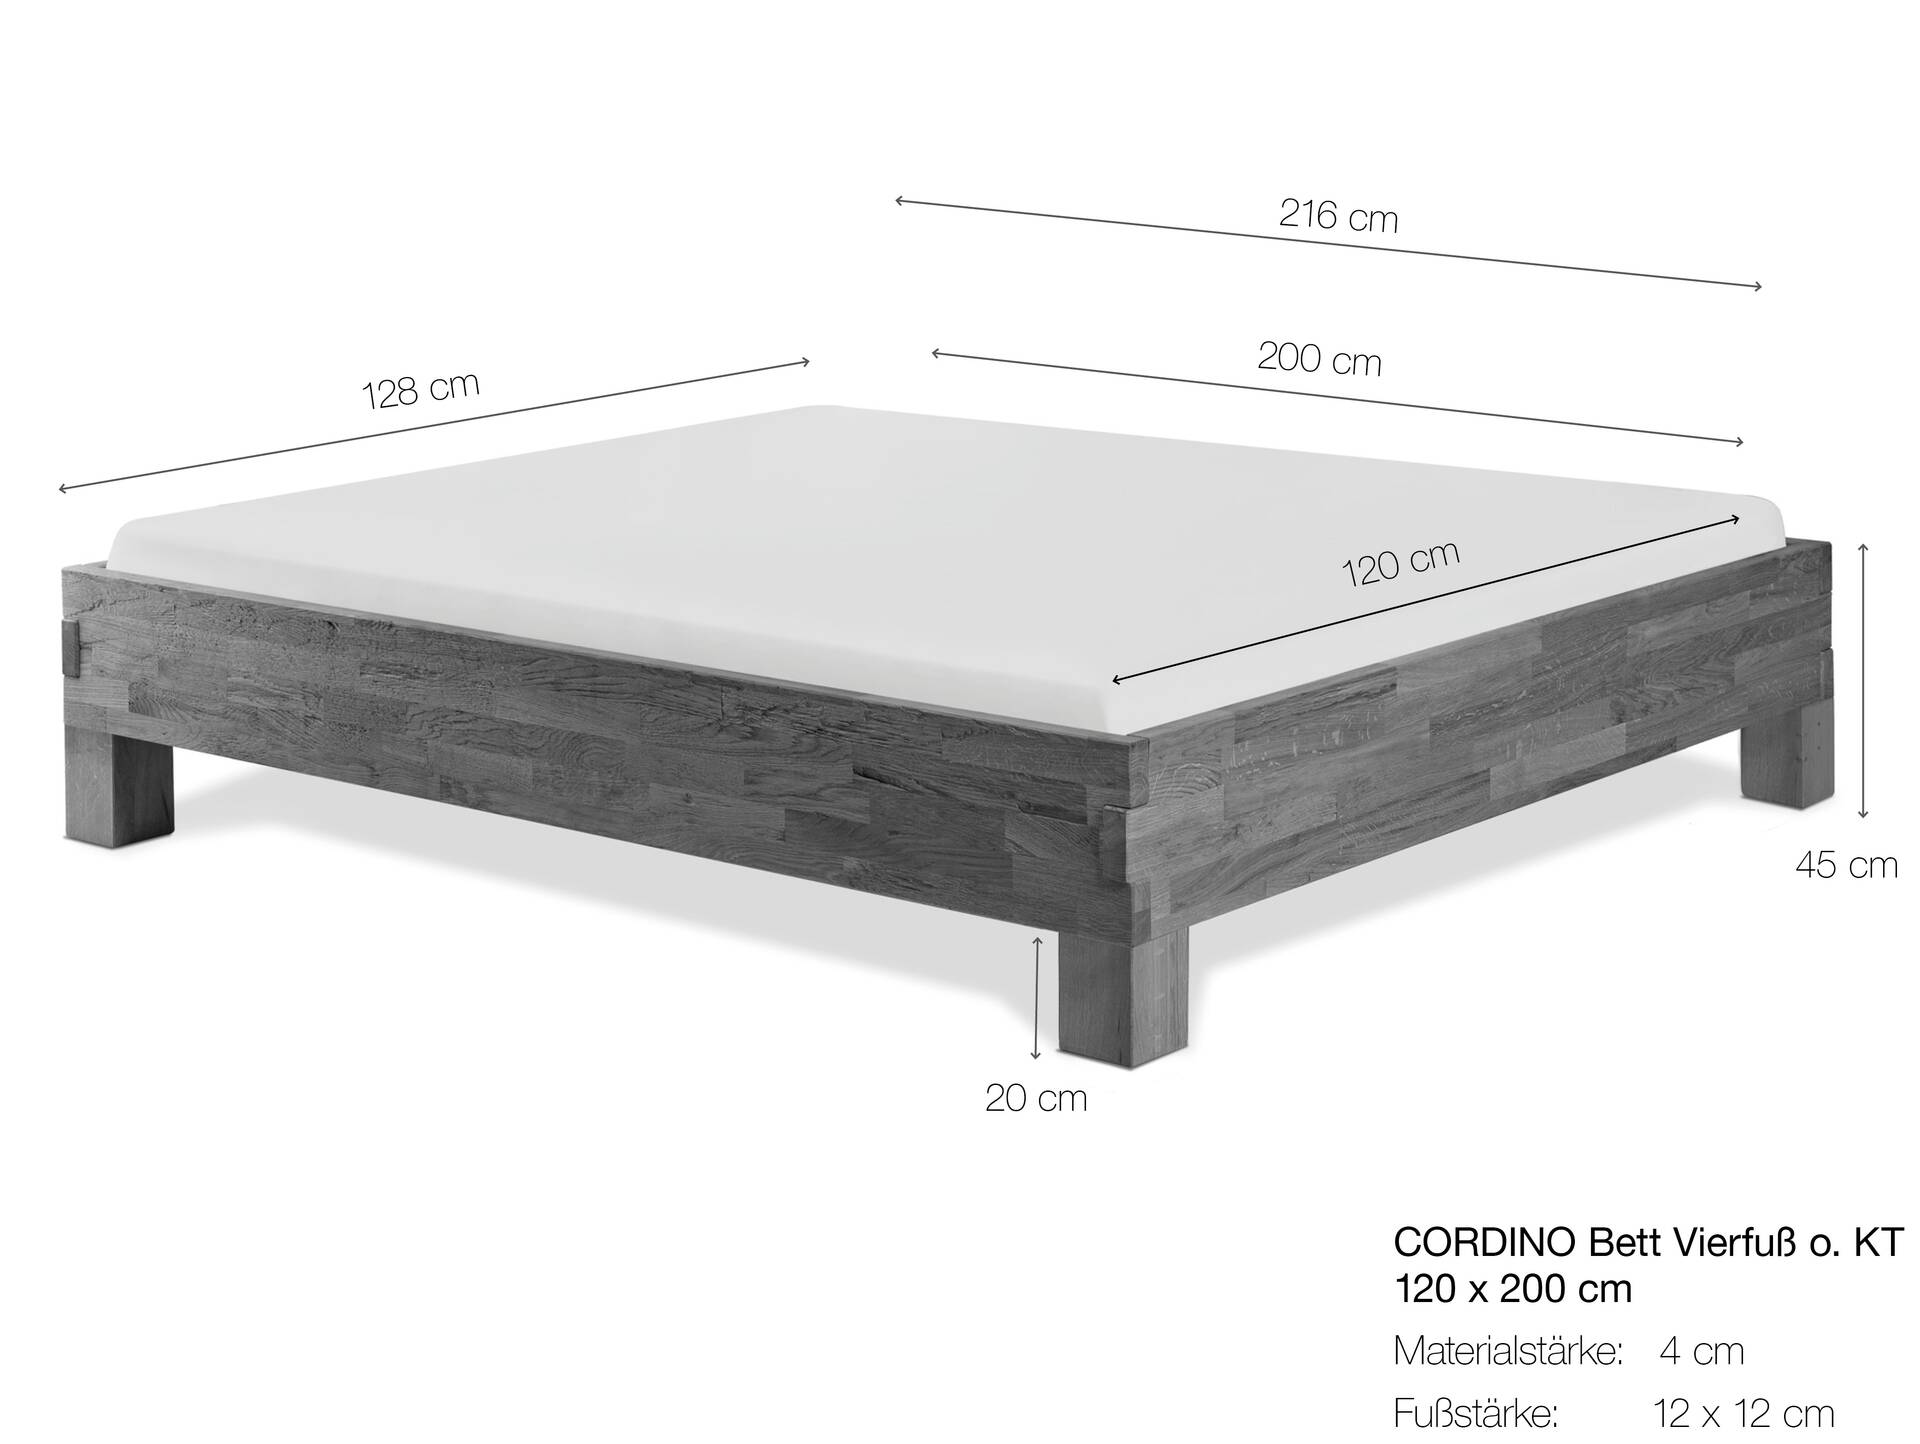 CORDINO 4-Fuß-Bett aus Eiche ohne Kopfteil, Material Massivholz 120 x 200 cm | Eiche unbehandelt | gebürstet